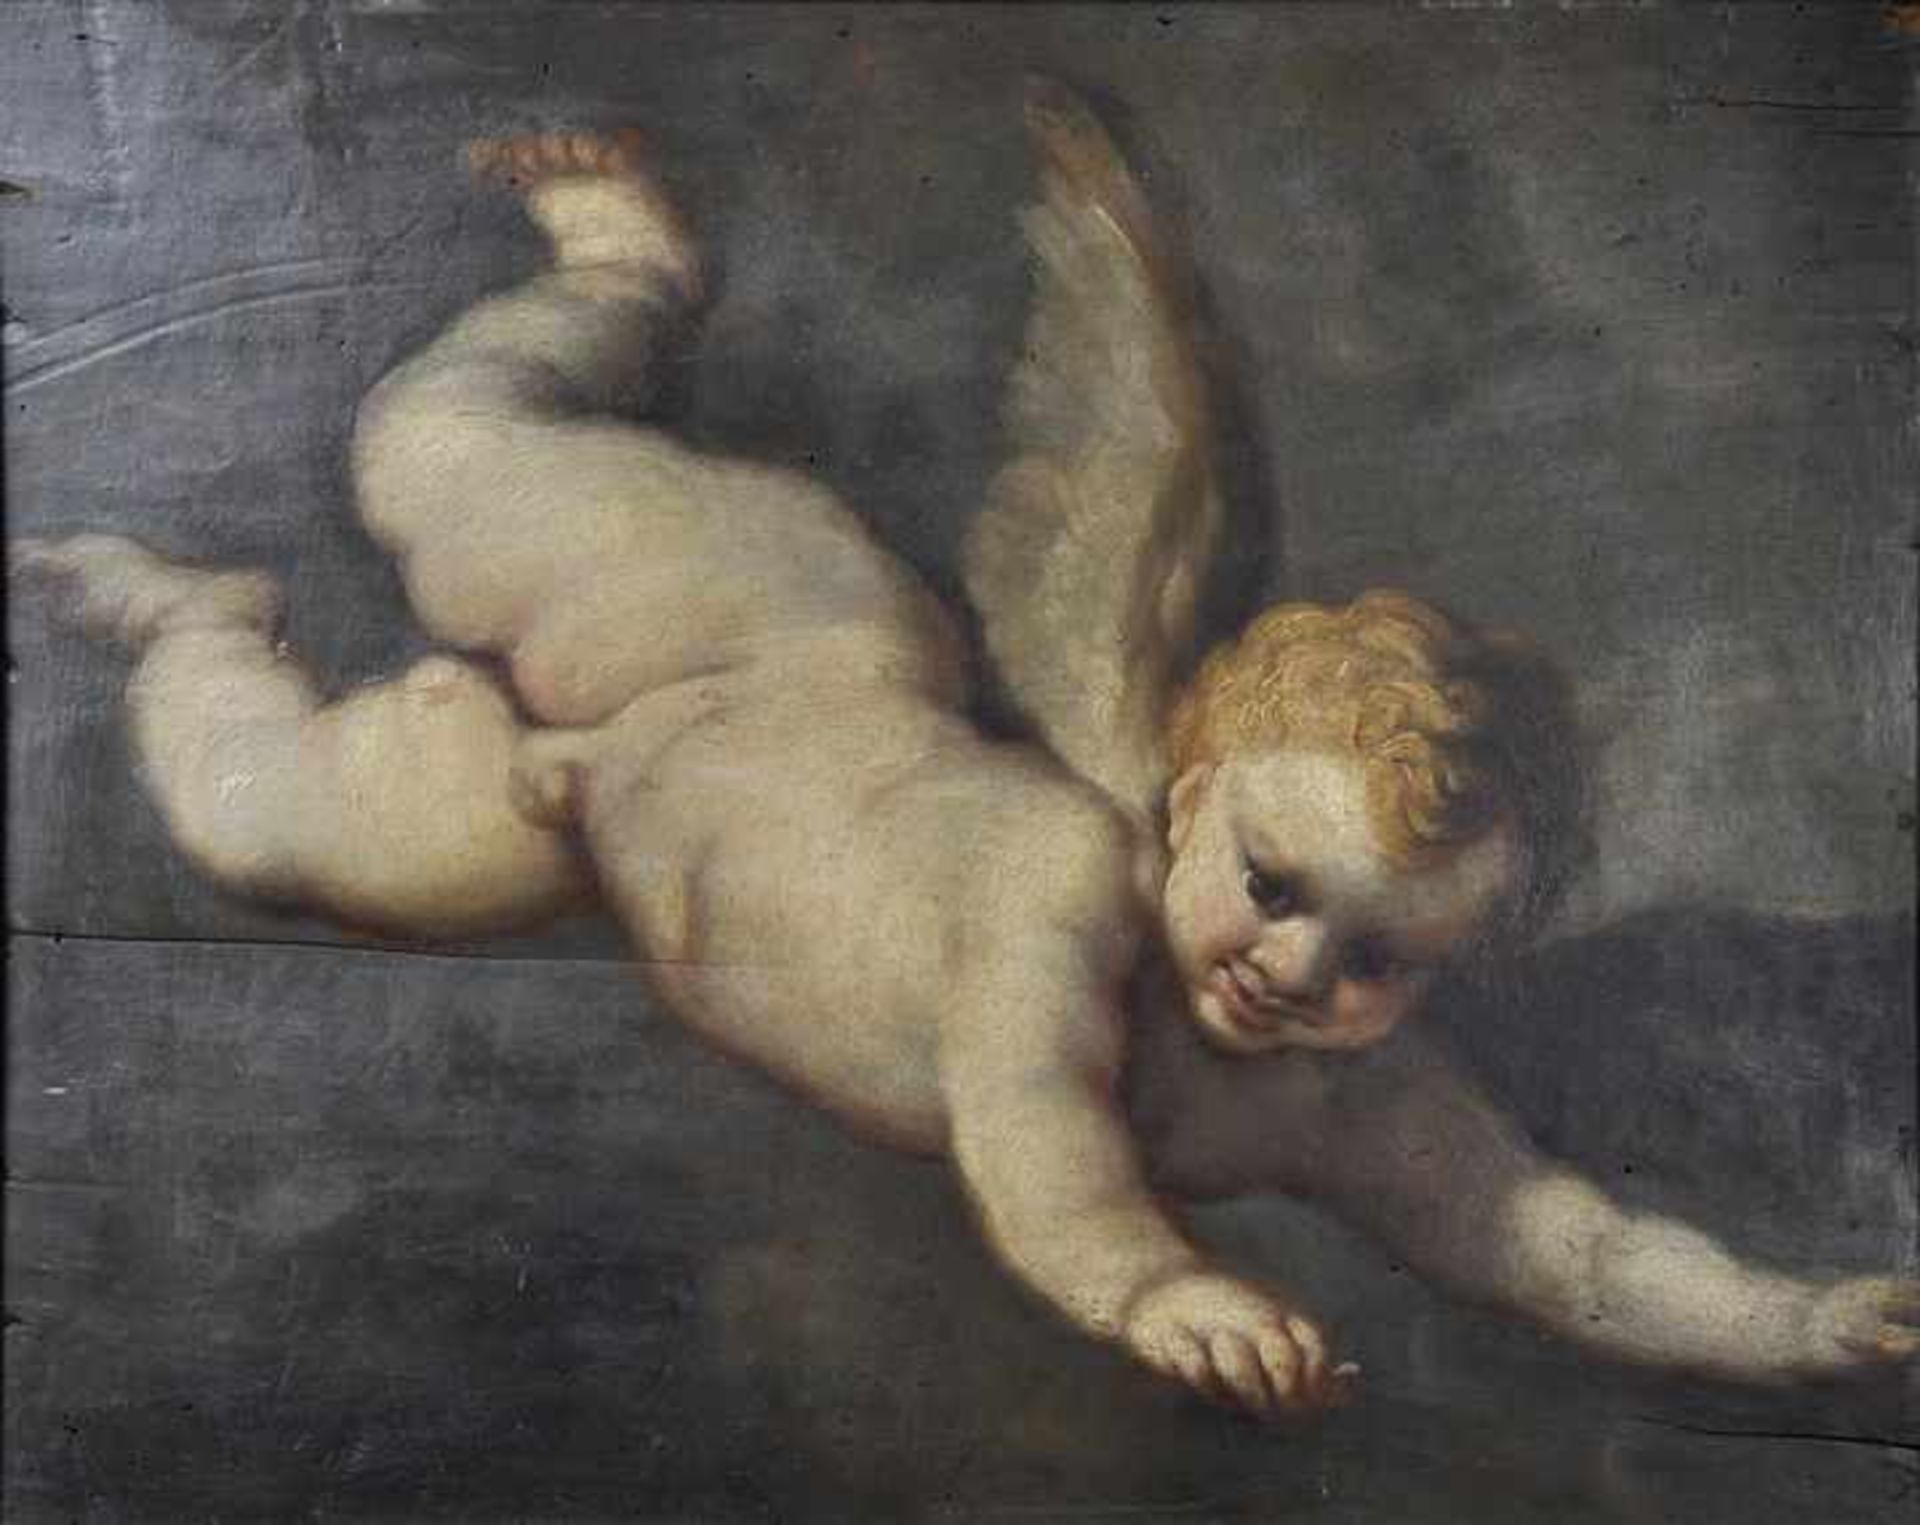 Allegri, Pomponio. 1521 Corregio-nach 1590 tätig in Parma Fliegender Putto. Öl auf Holztafel,